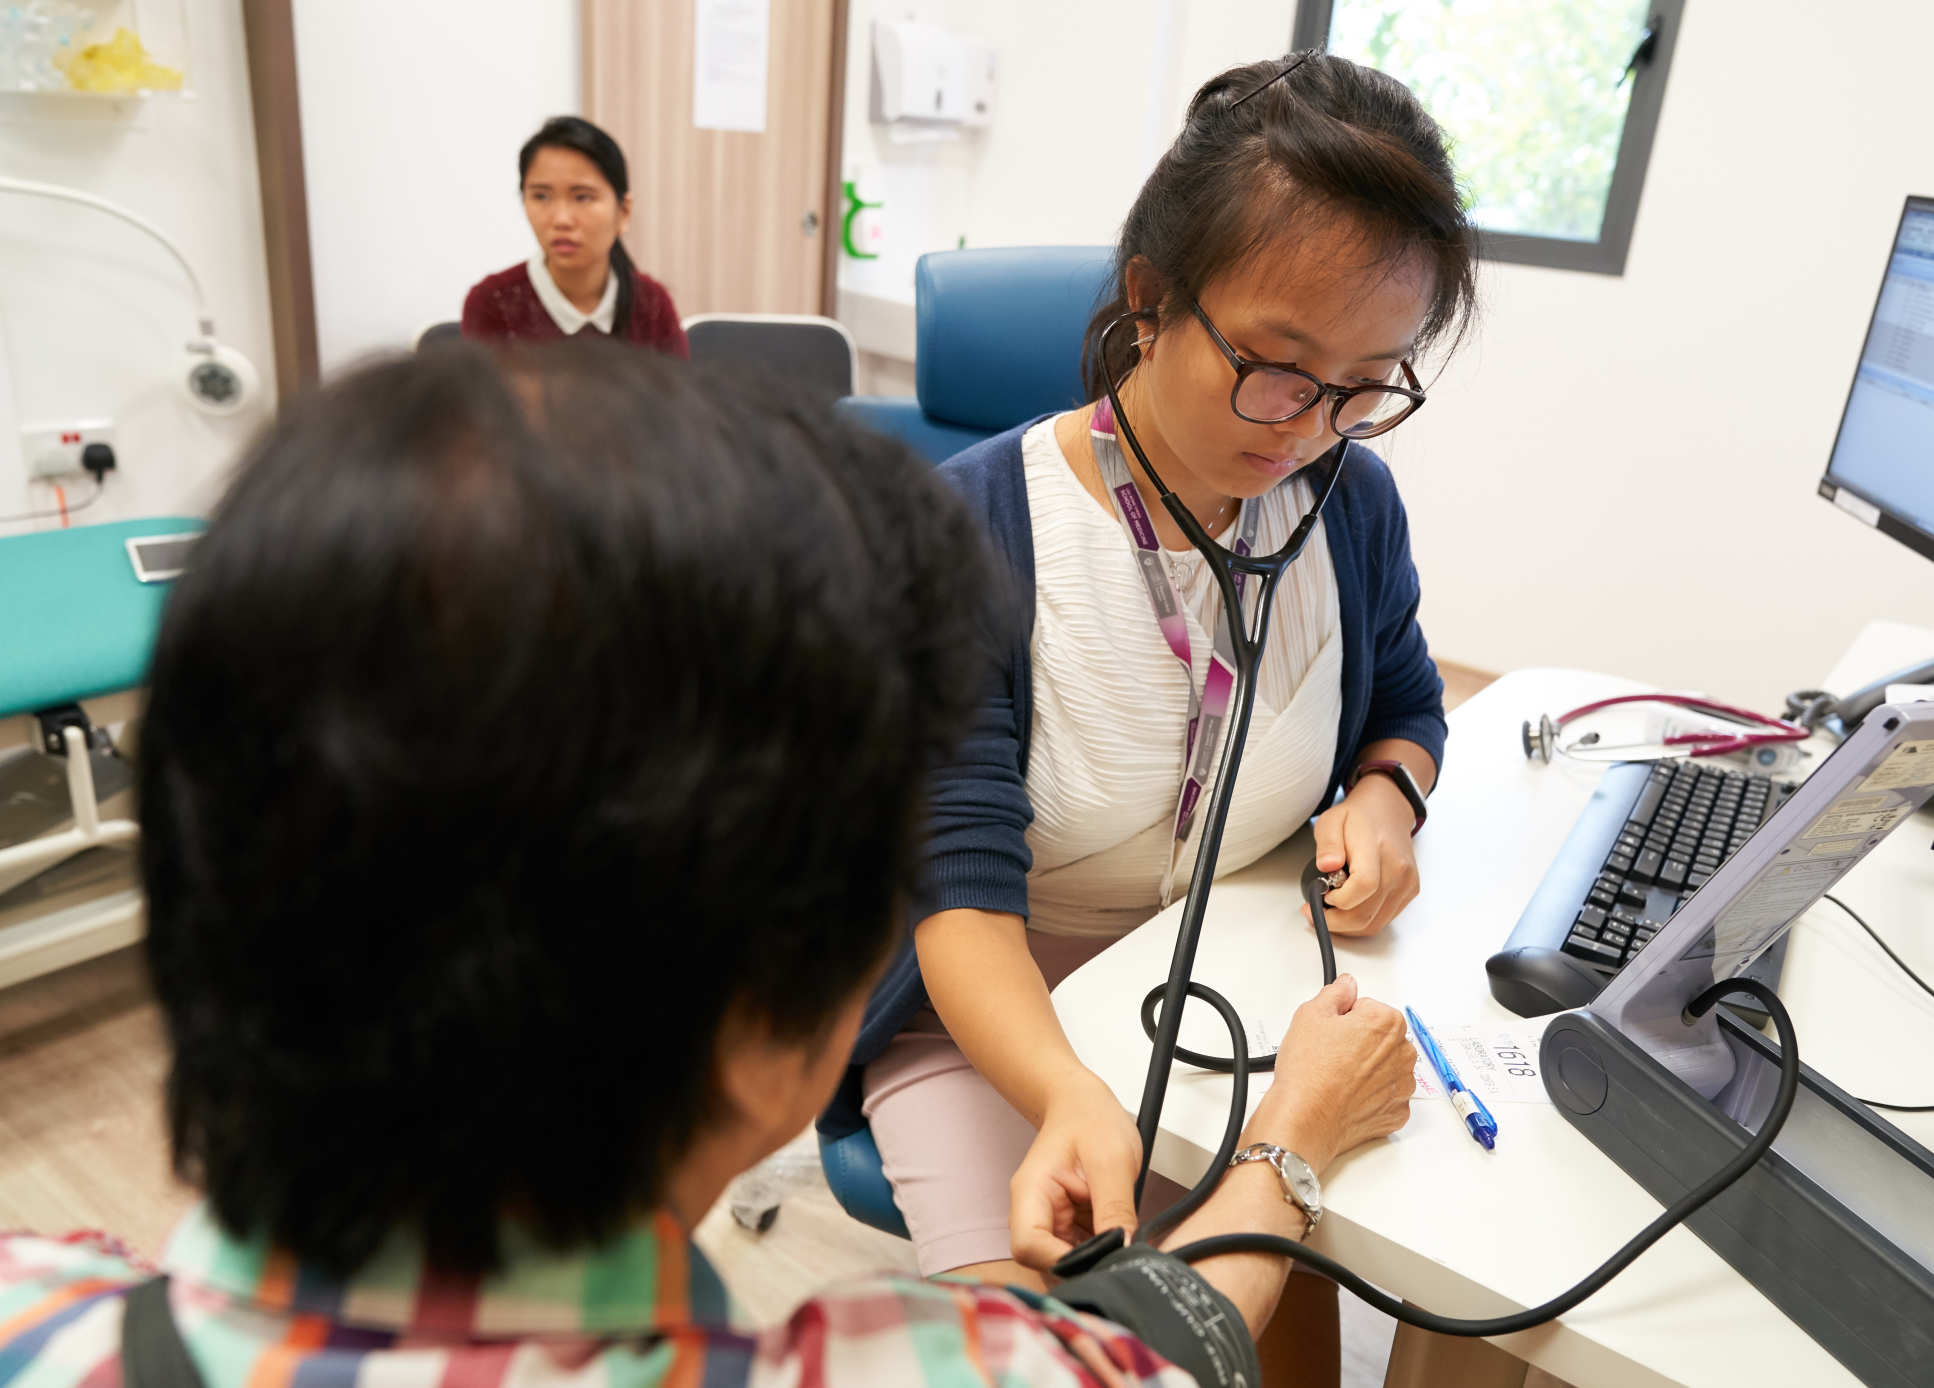 acqueline takes a patient's blood pressure 